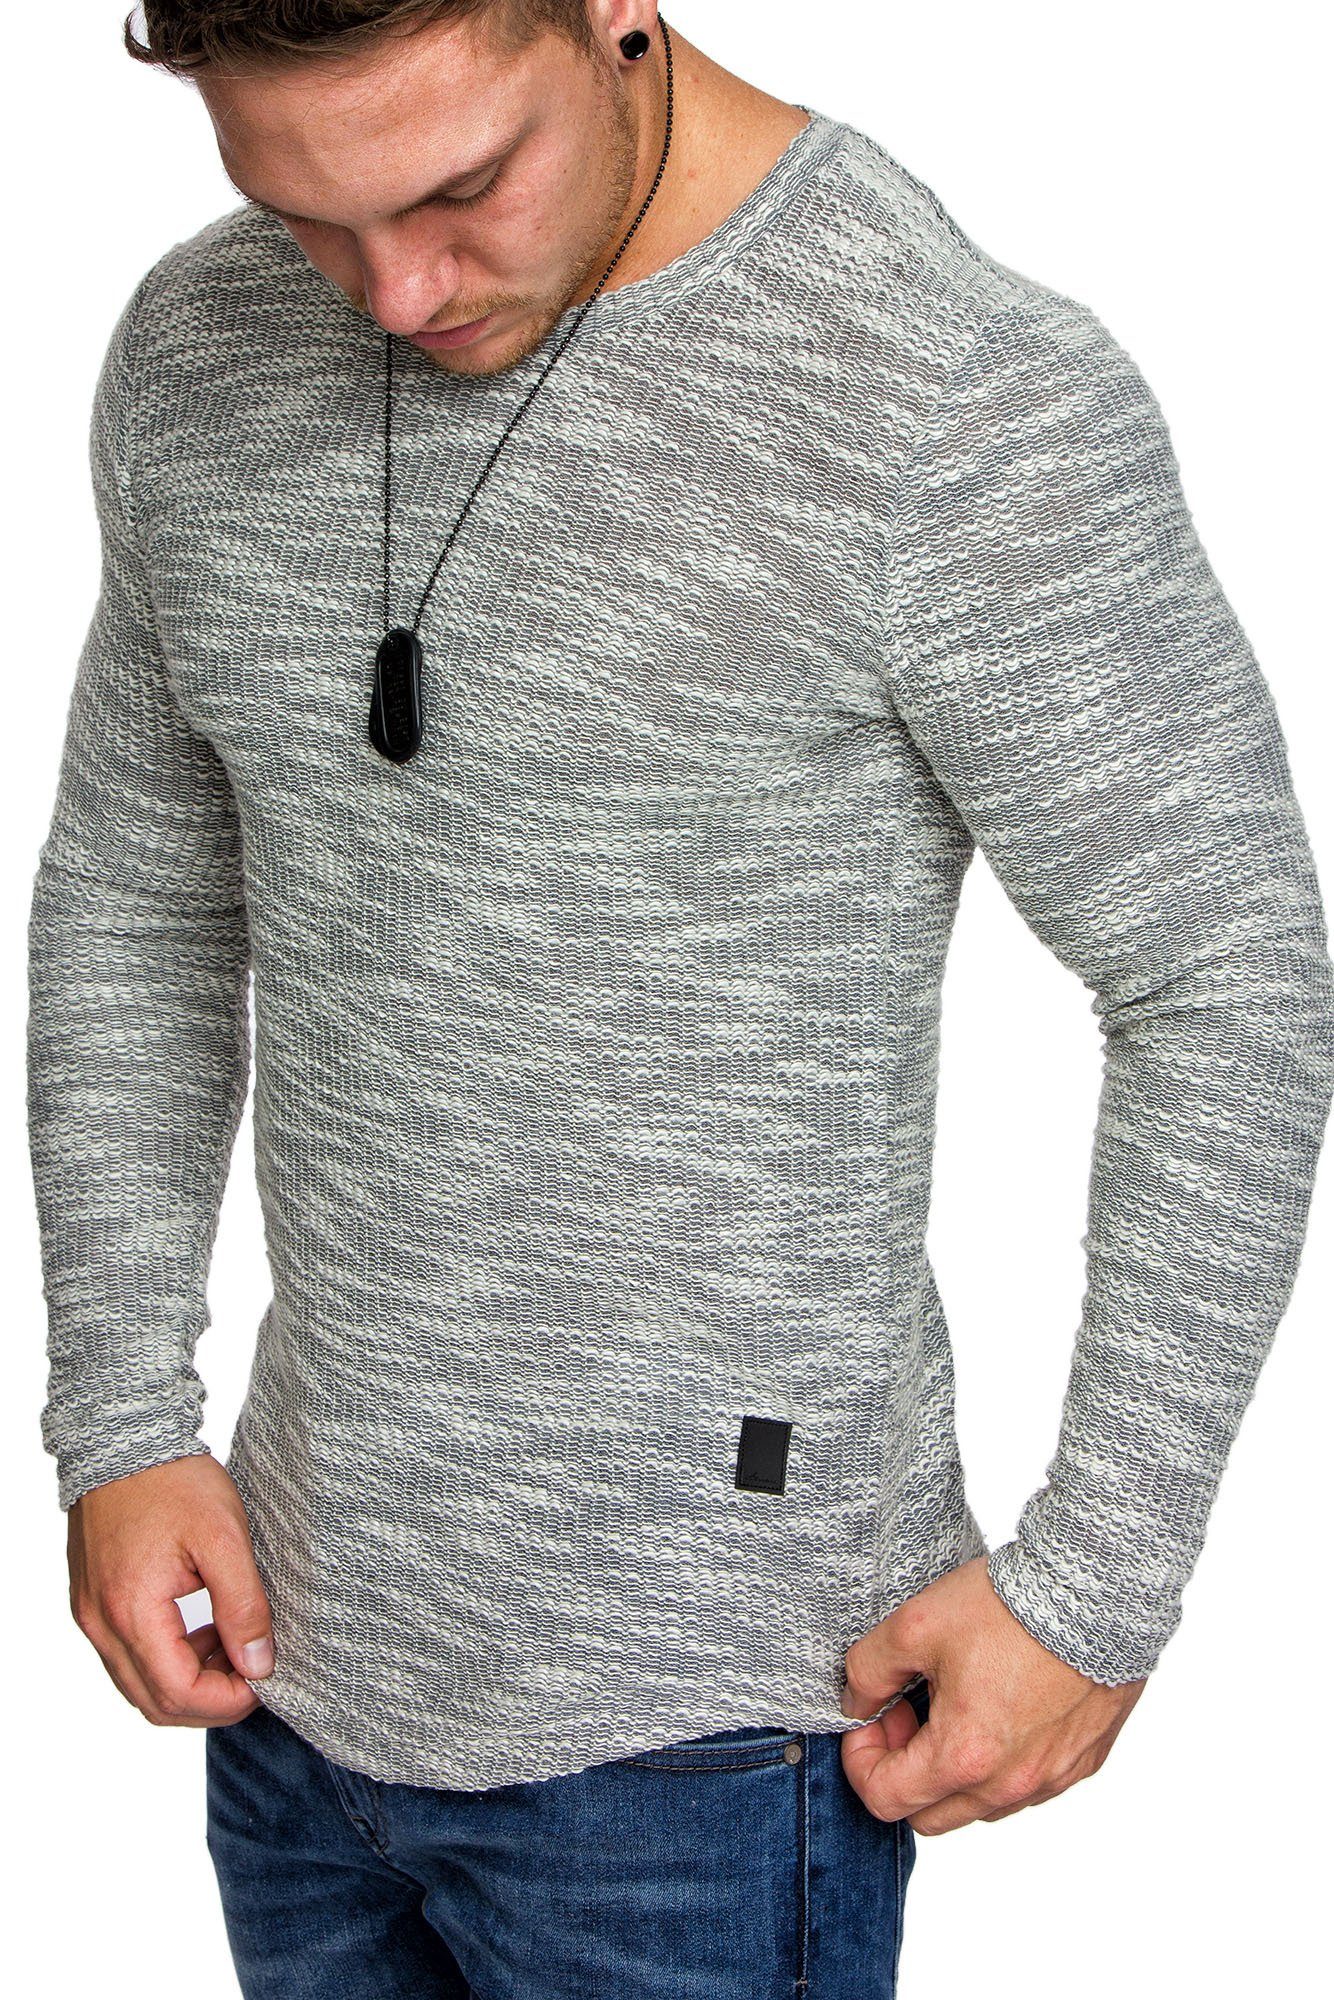 Amaci&Sons Sweatshirt NAMPA Sweatshirt mit Rundhalsausschnitt Herren Pullover Vintage Sweatshirt Hoodie Rundhalsausschnitt Grau